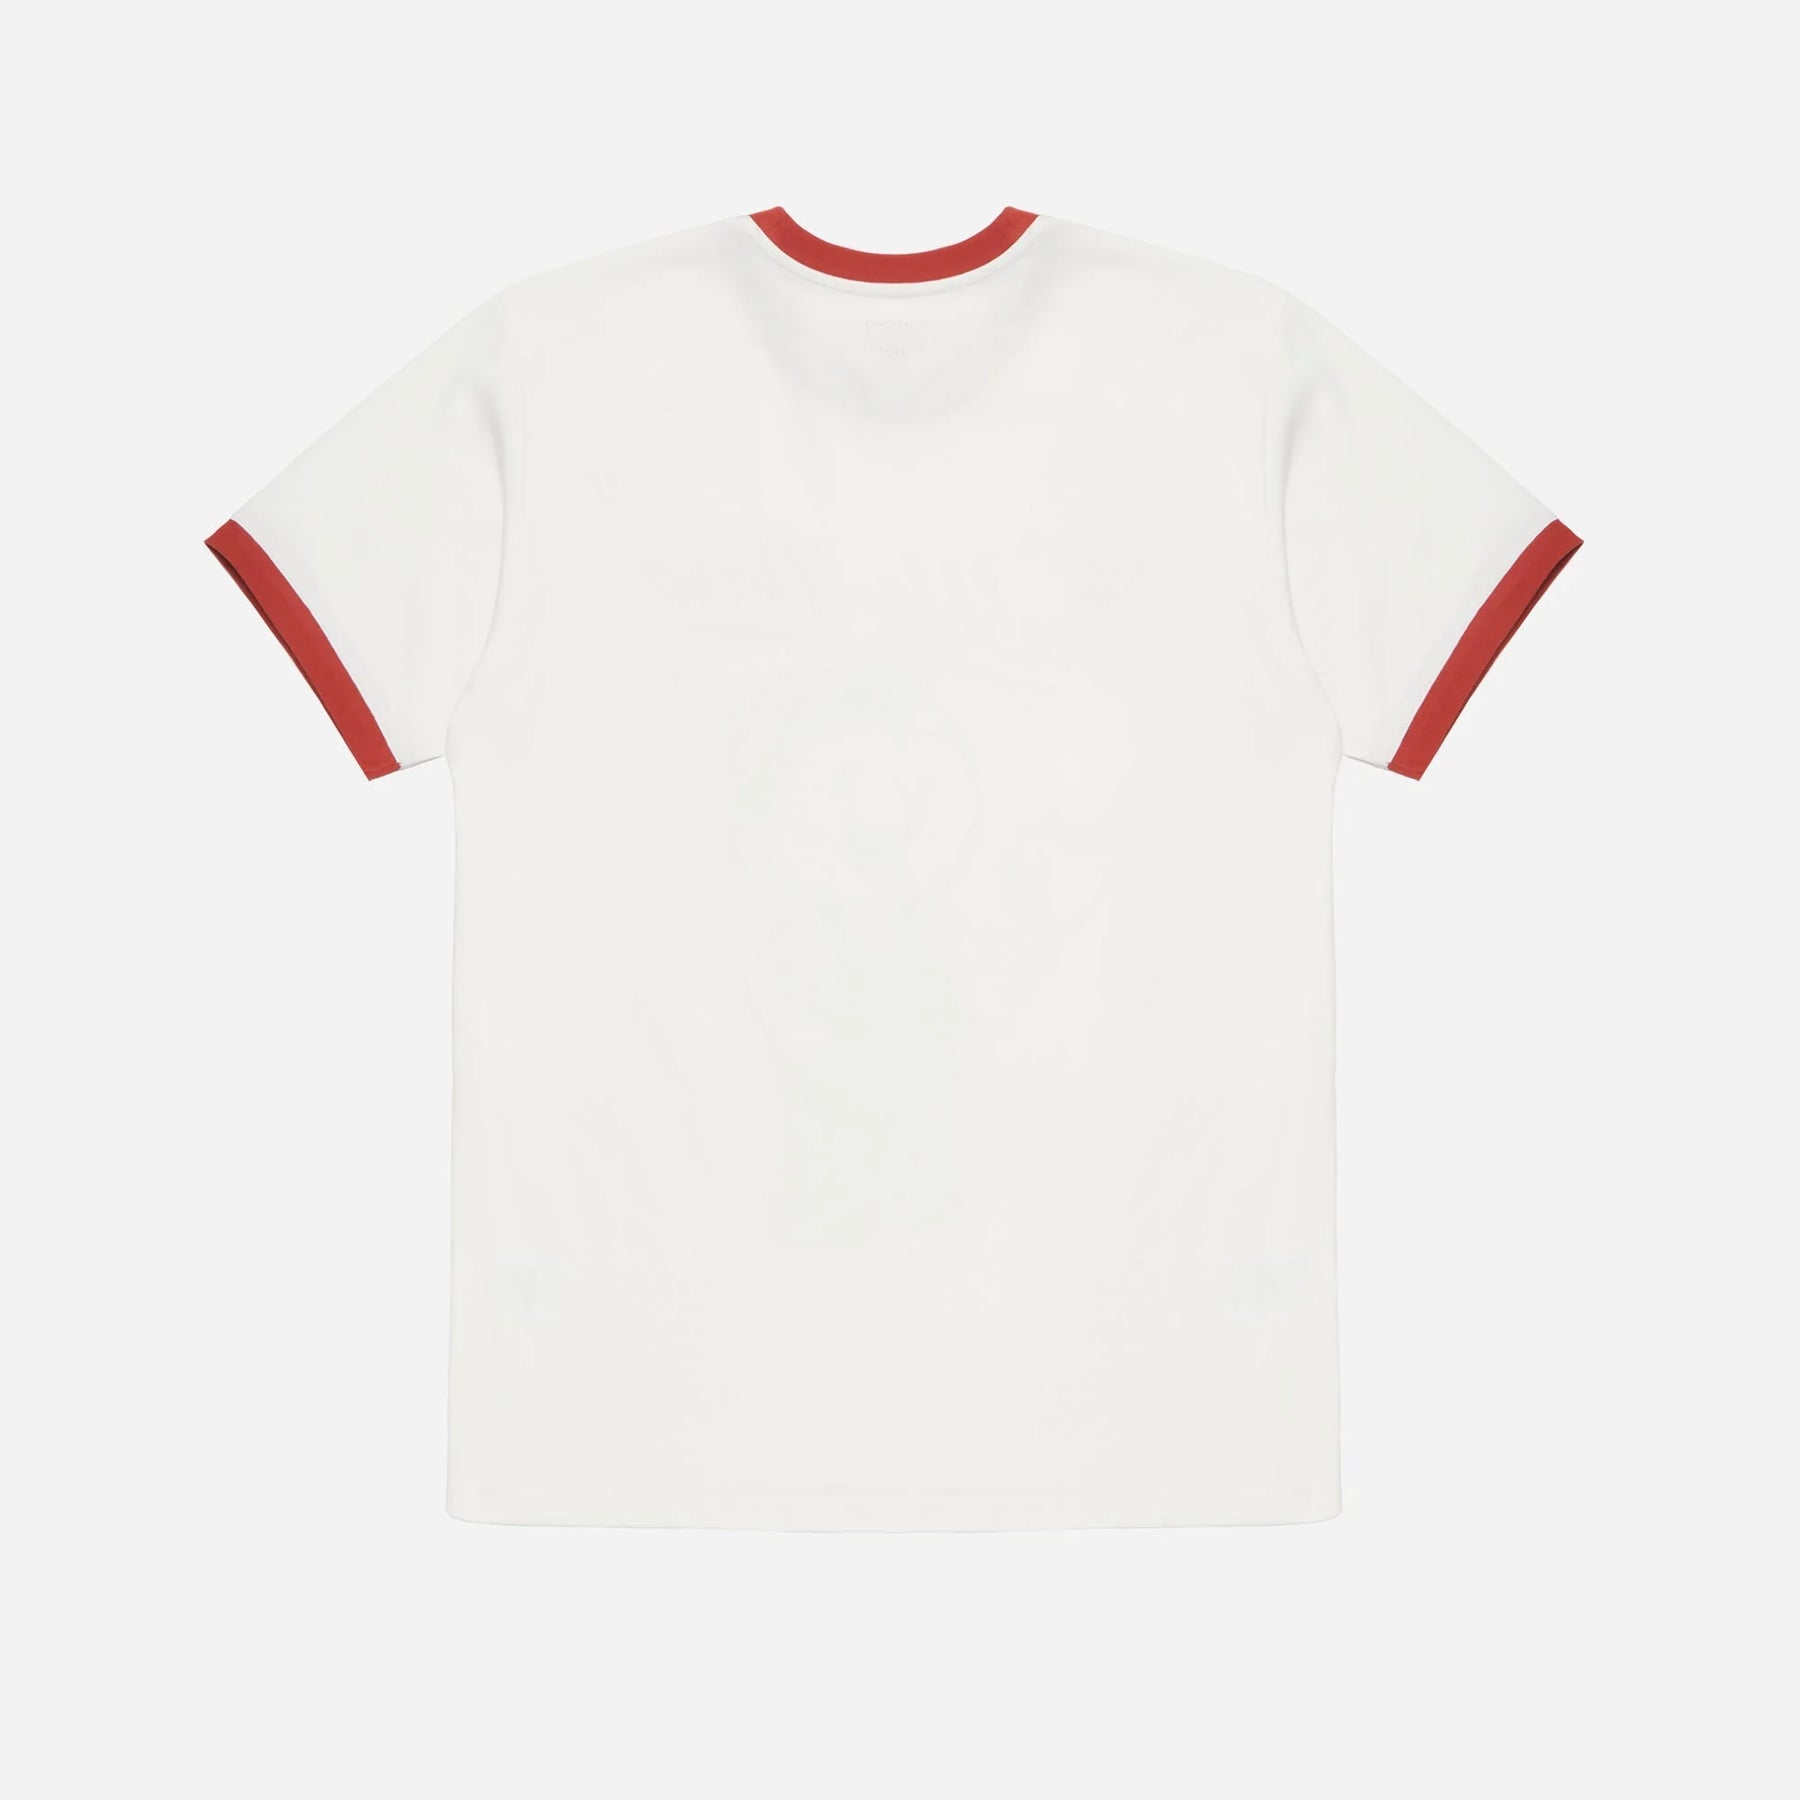 Dubbleware Pippin Apple Ringer T-Shirt